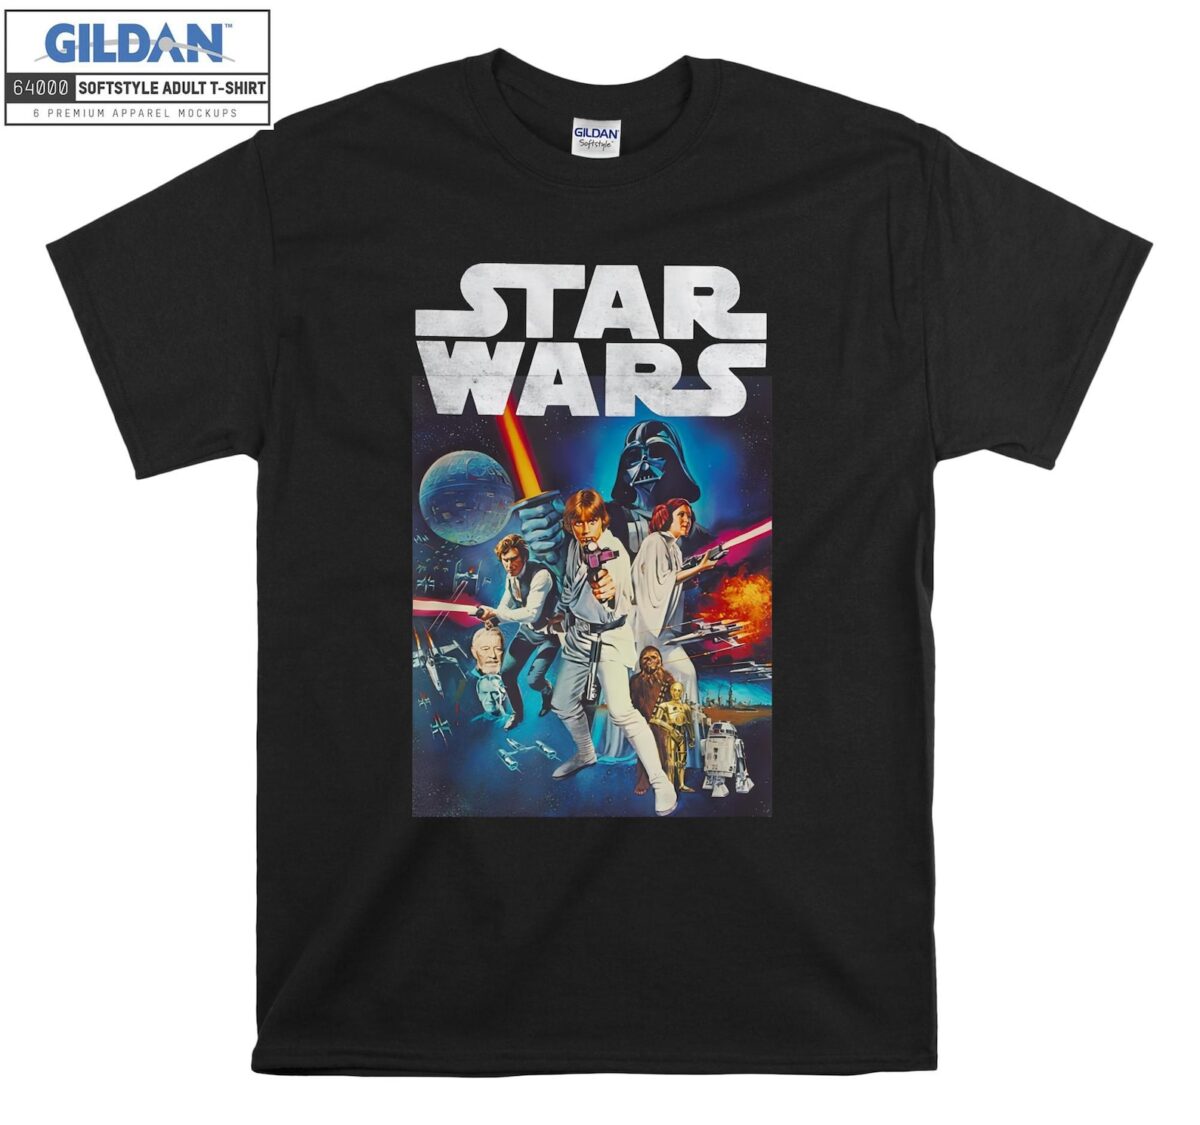 Classic Star Wars t-shirt